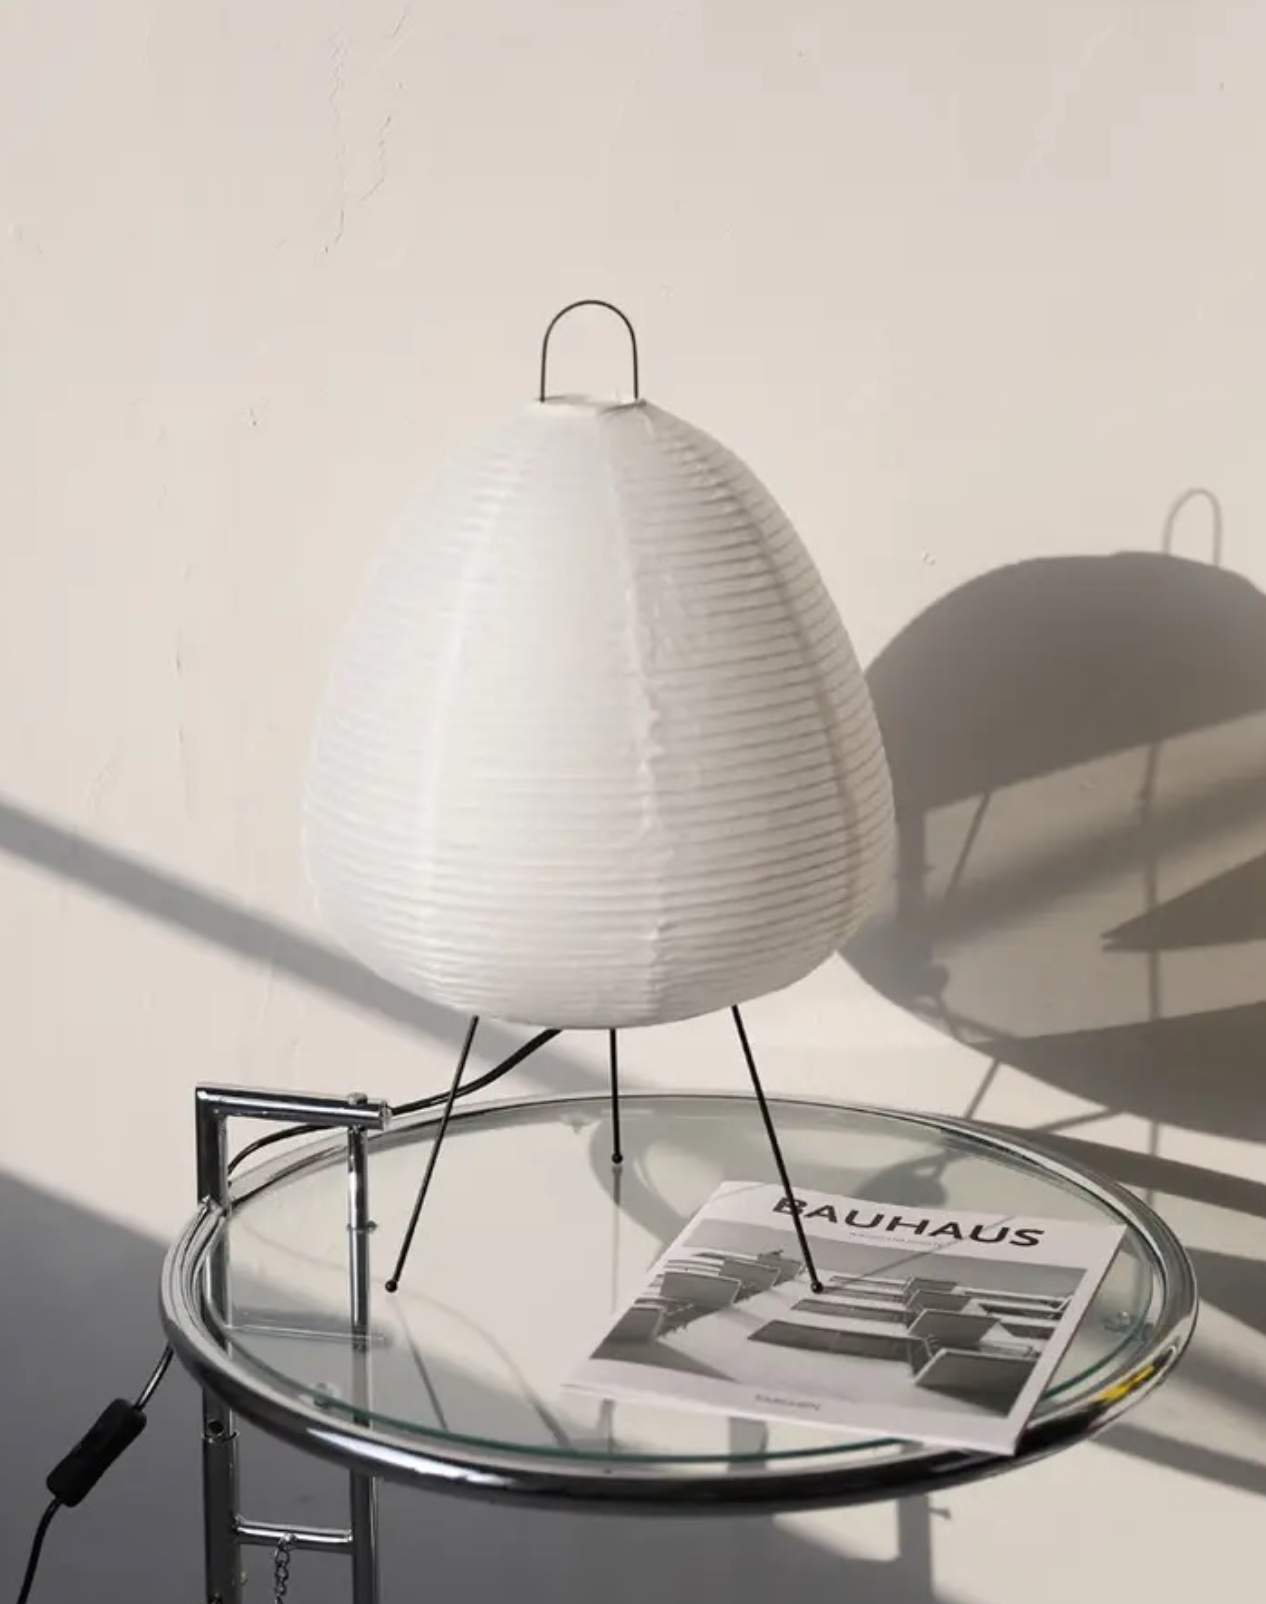 Wabi-sabi Rice Paper Lamp